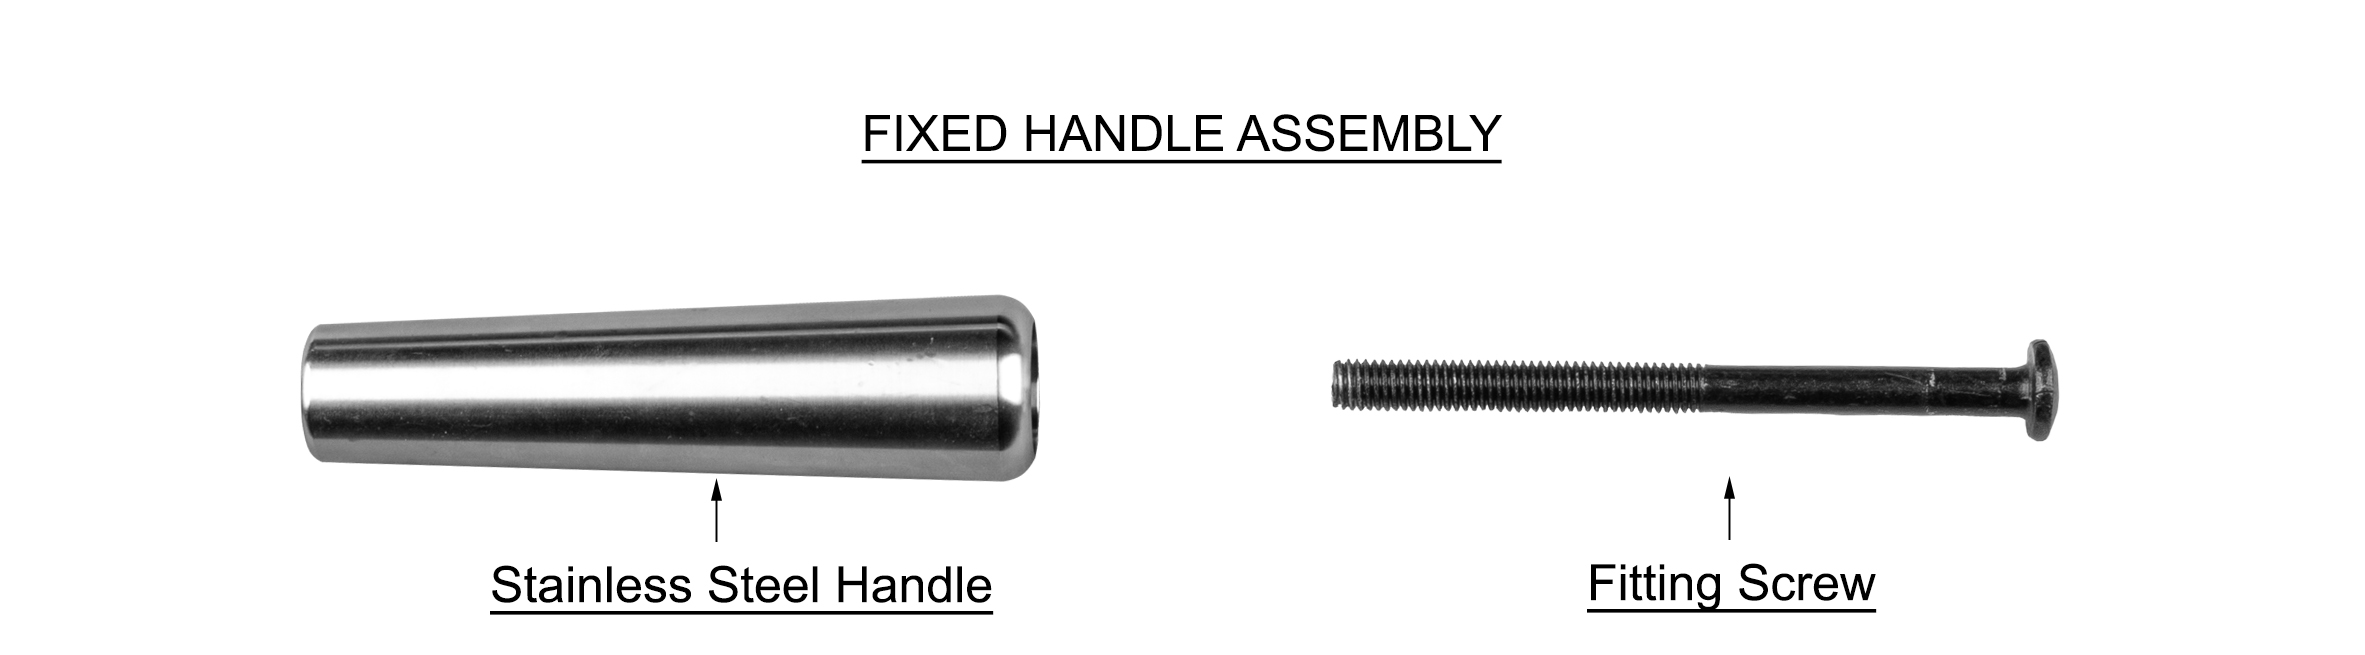 fixed handle